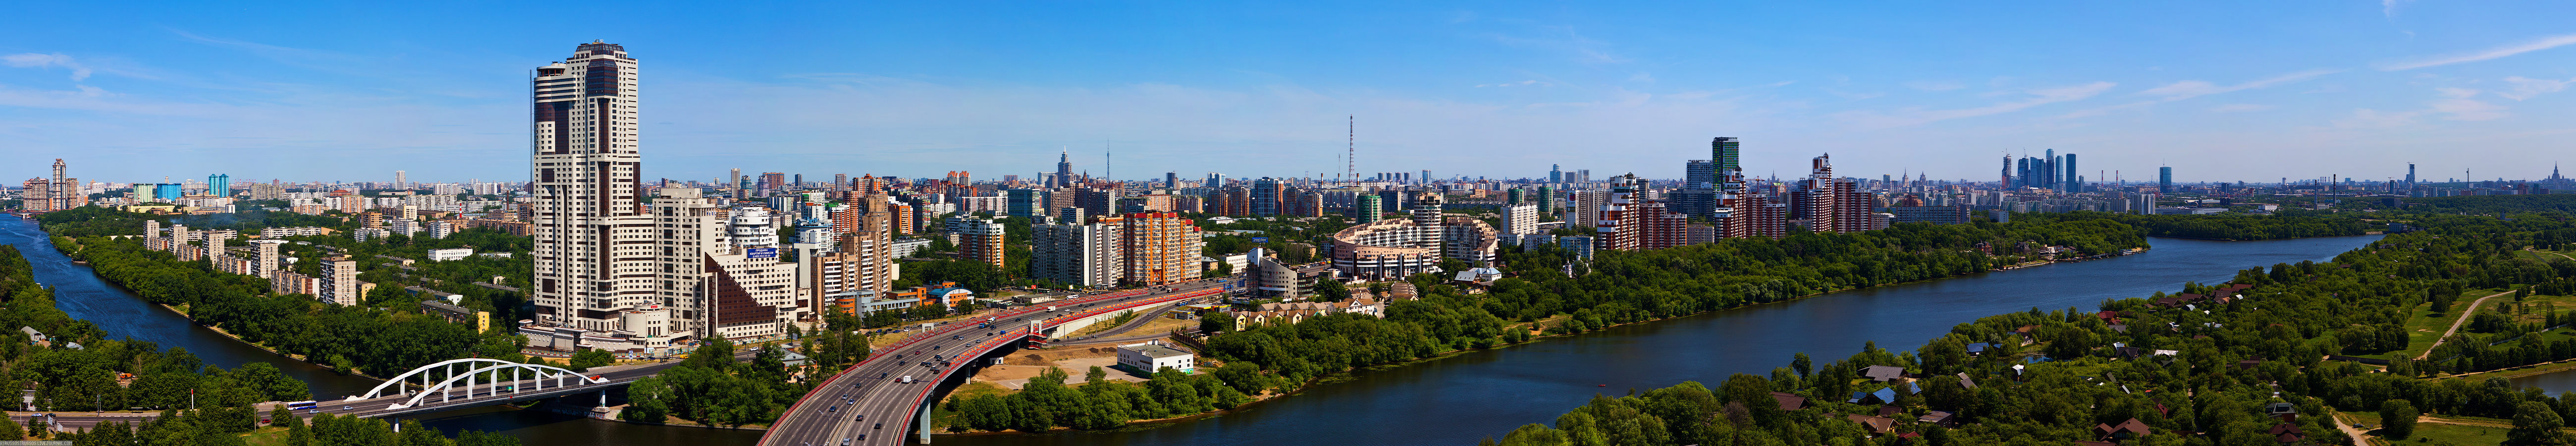 Панорамное фото города